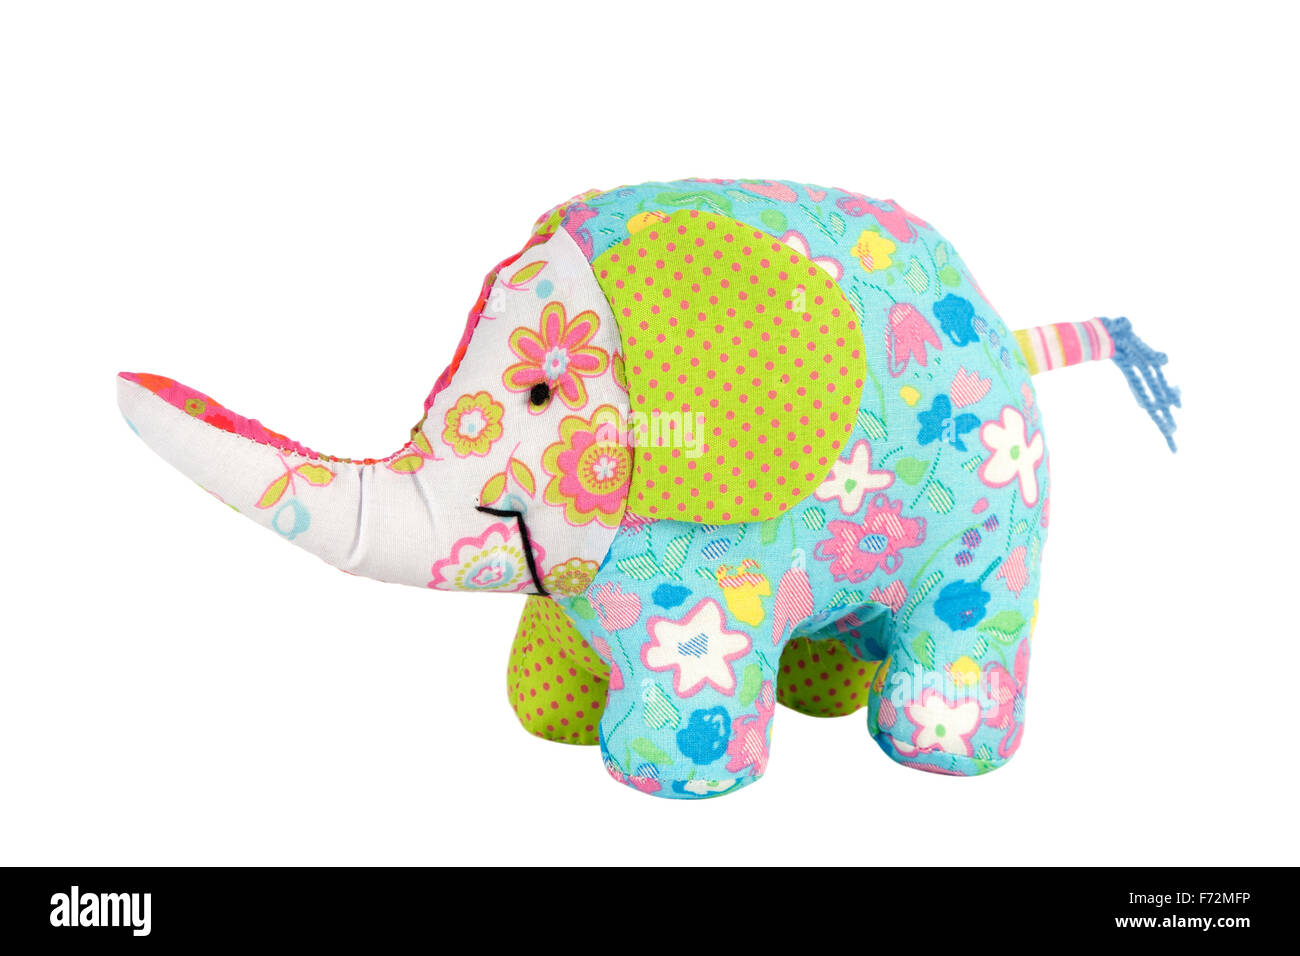 elephant toy isolated on white, Pattern Fabric Stock Photo